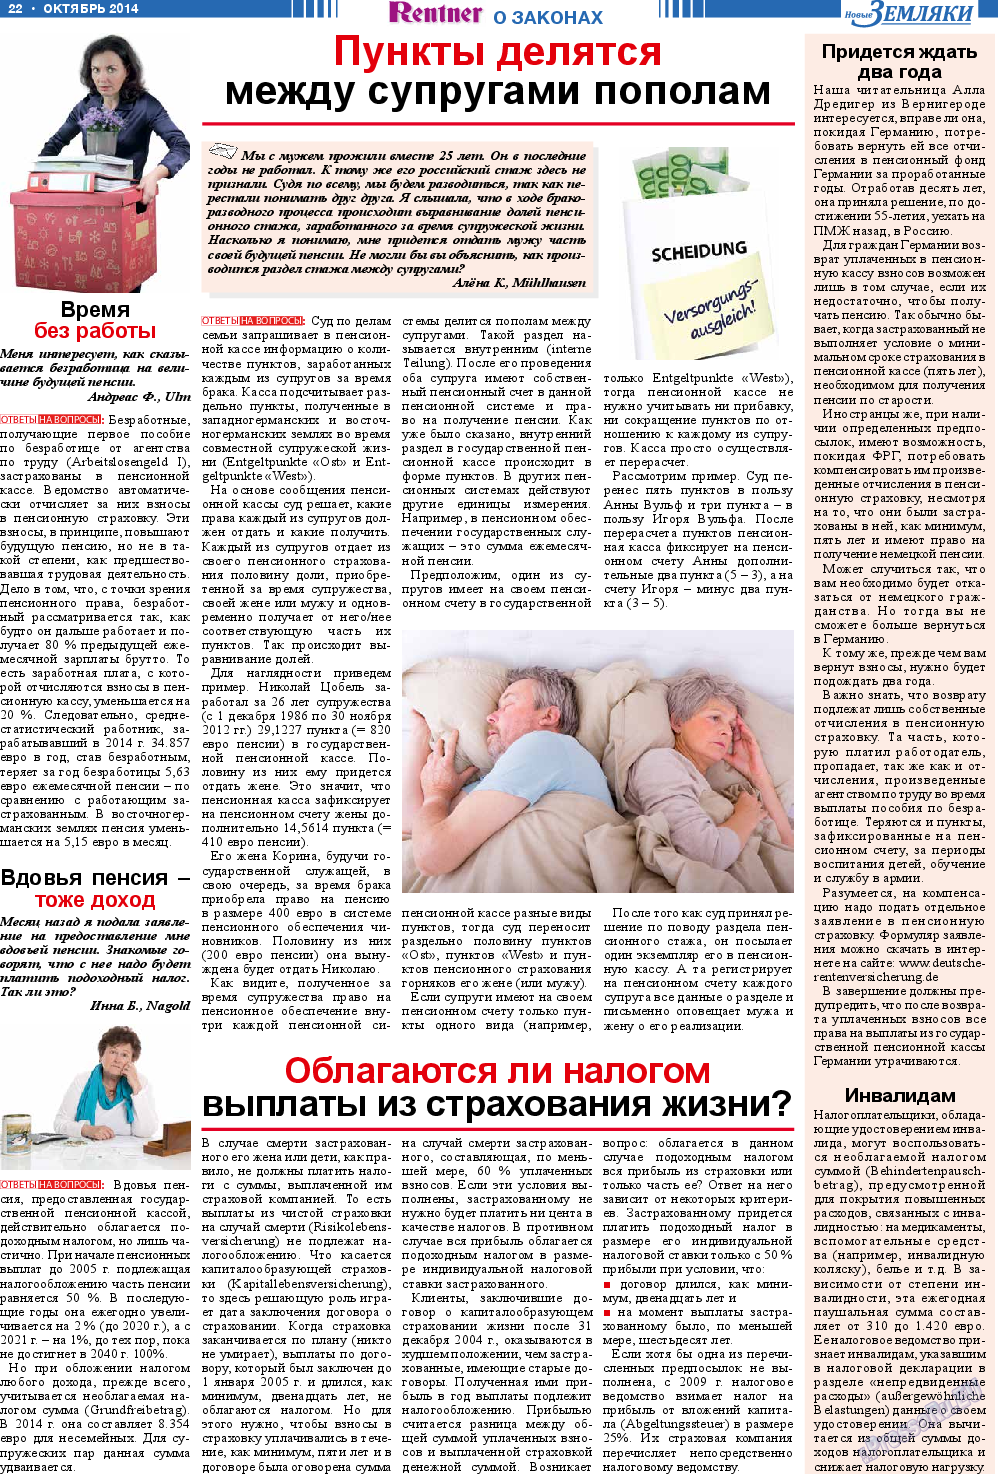 Новые Земляки, газета. 2014 №10 стр.22